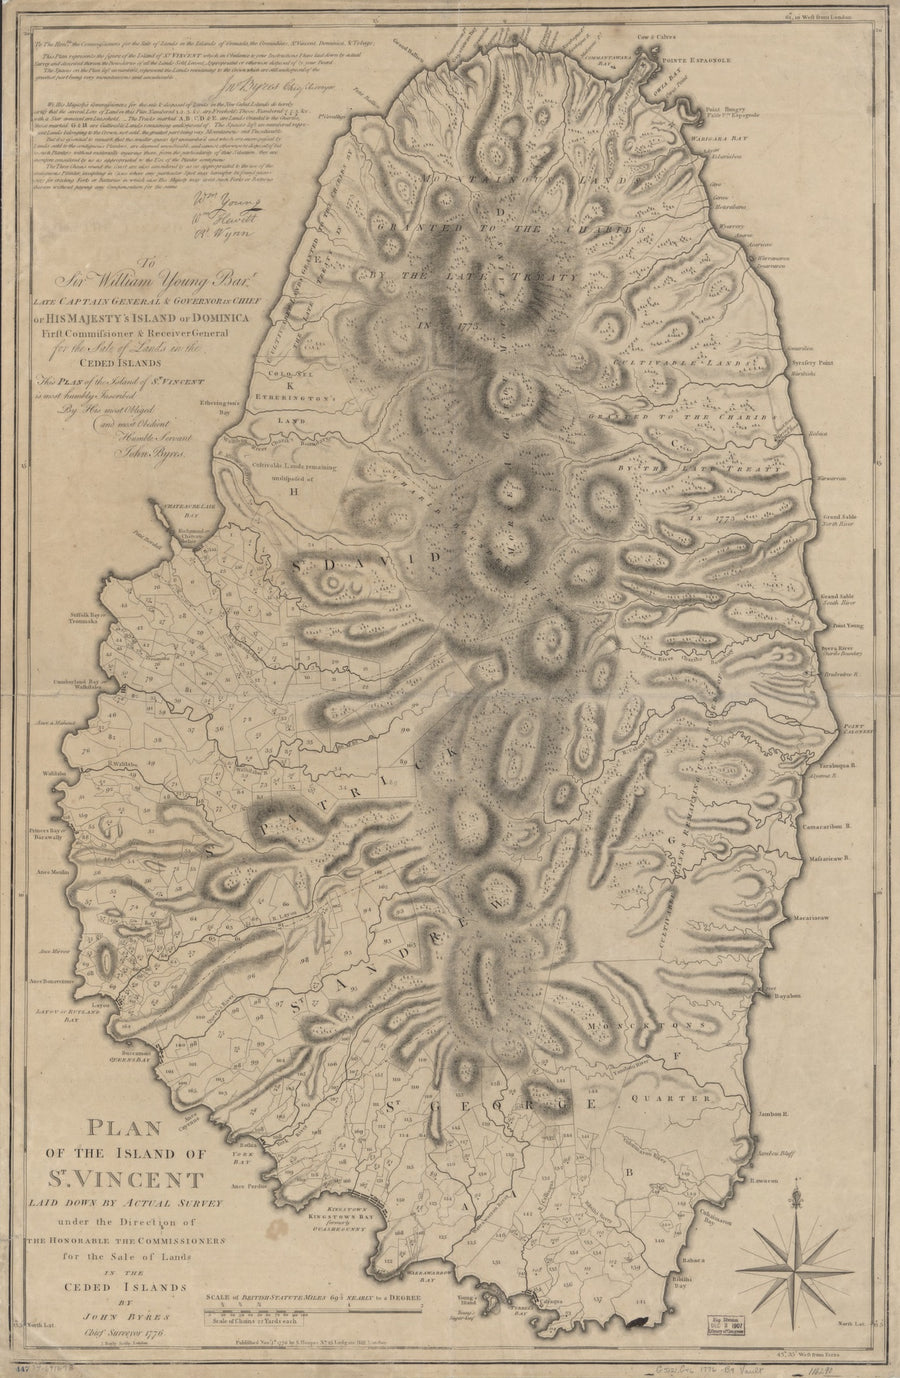 St. Vincent Map - 1776